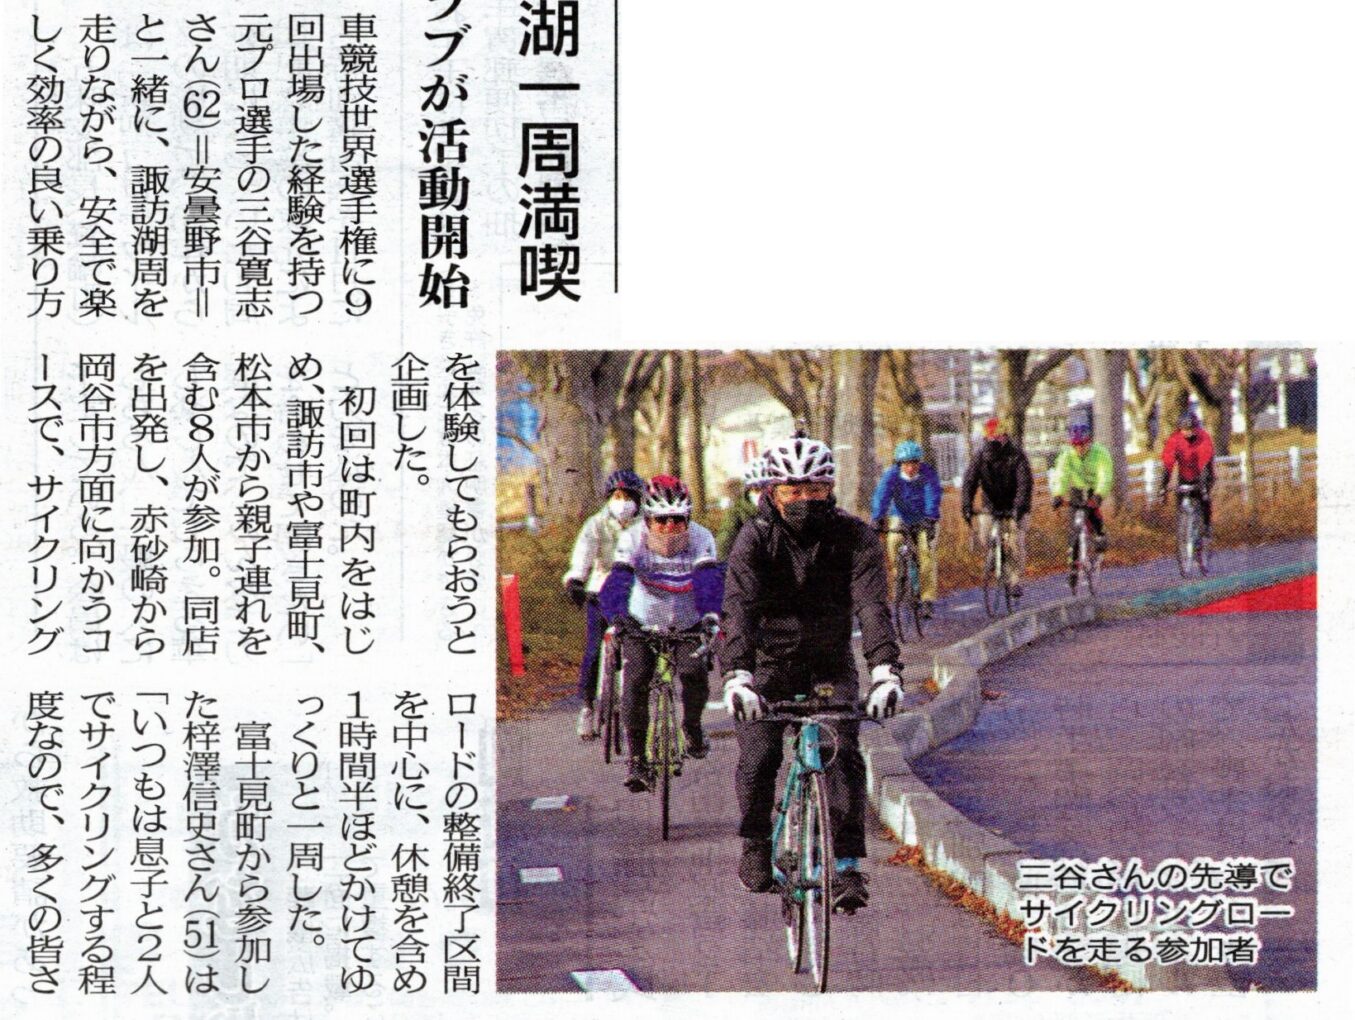 「モーニングサイクル」の模様が市民新聞に掲載されました